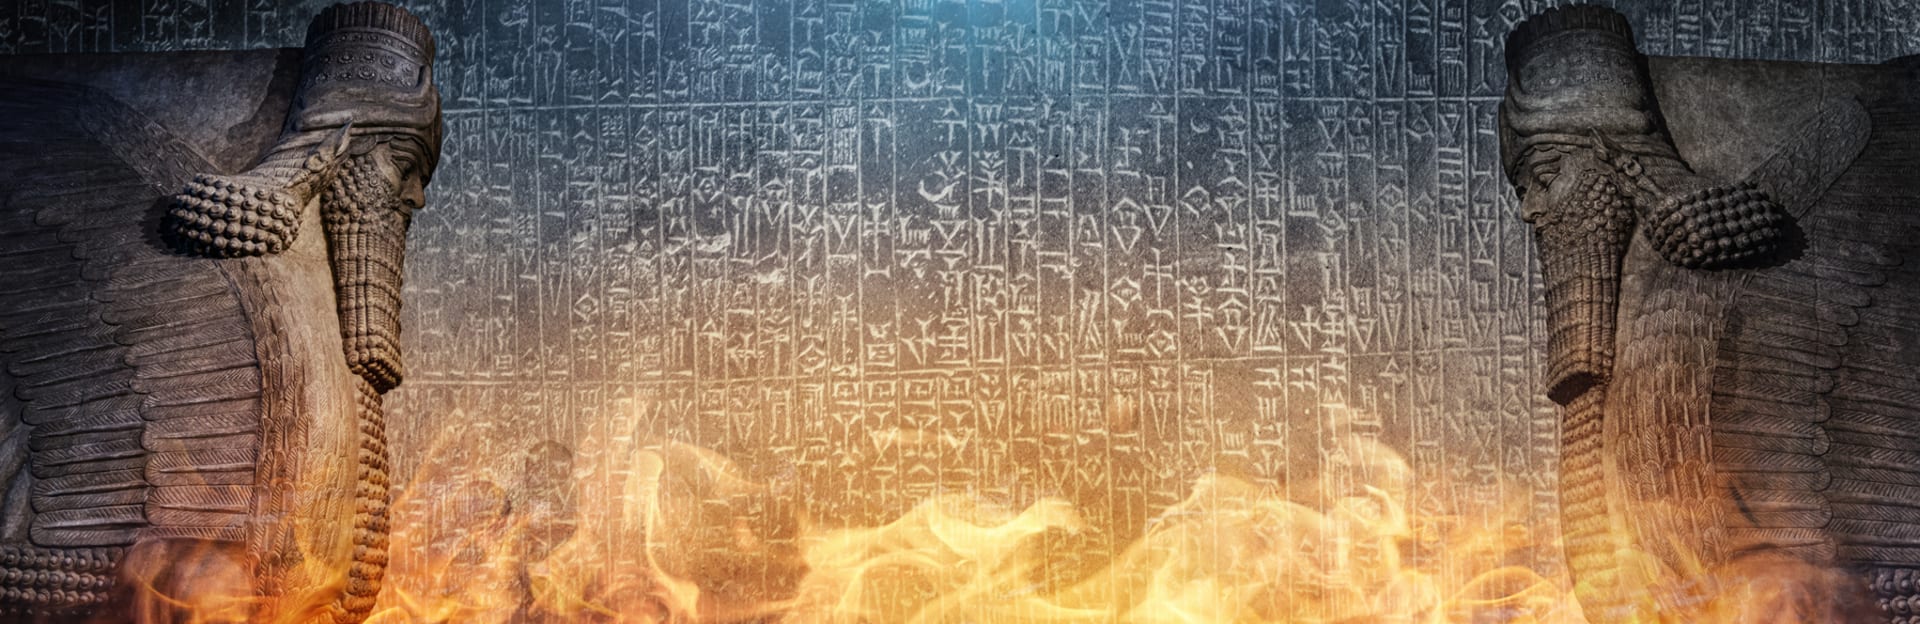 Artefakty a písmo z Babylonie